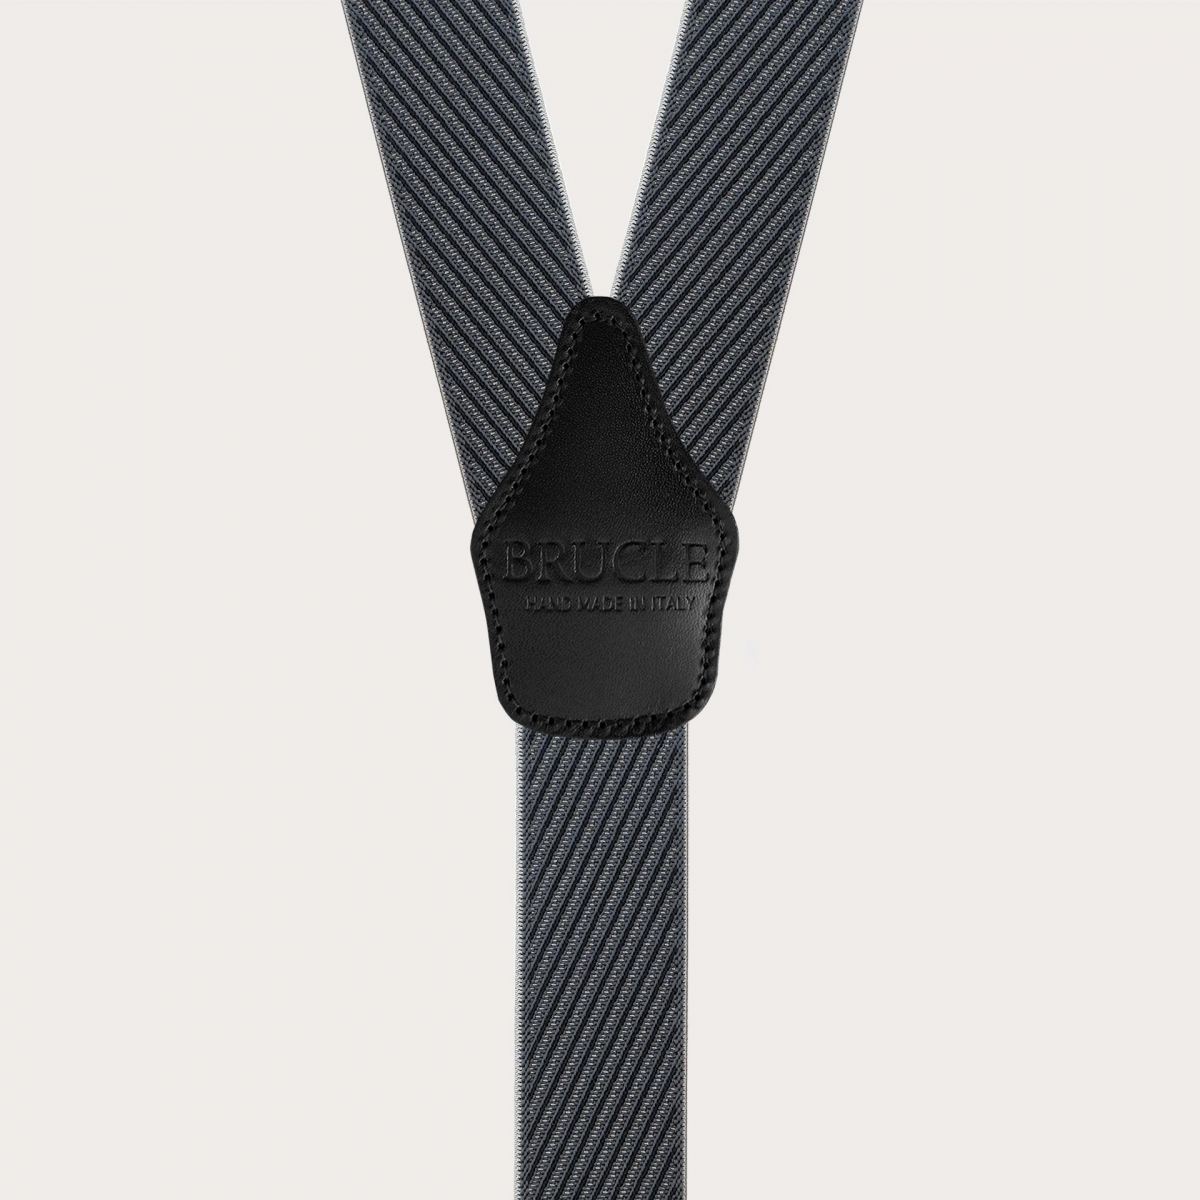 Bretelle elastiche nere e grigie a righe con clip